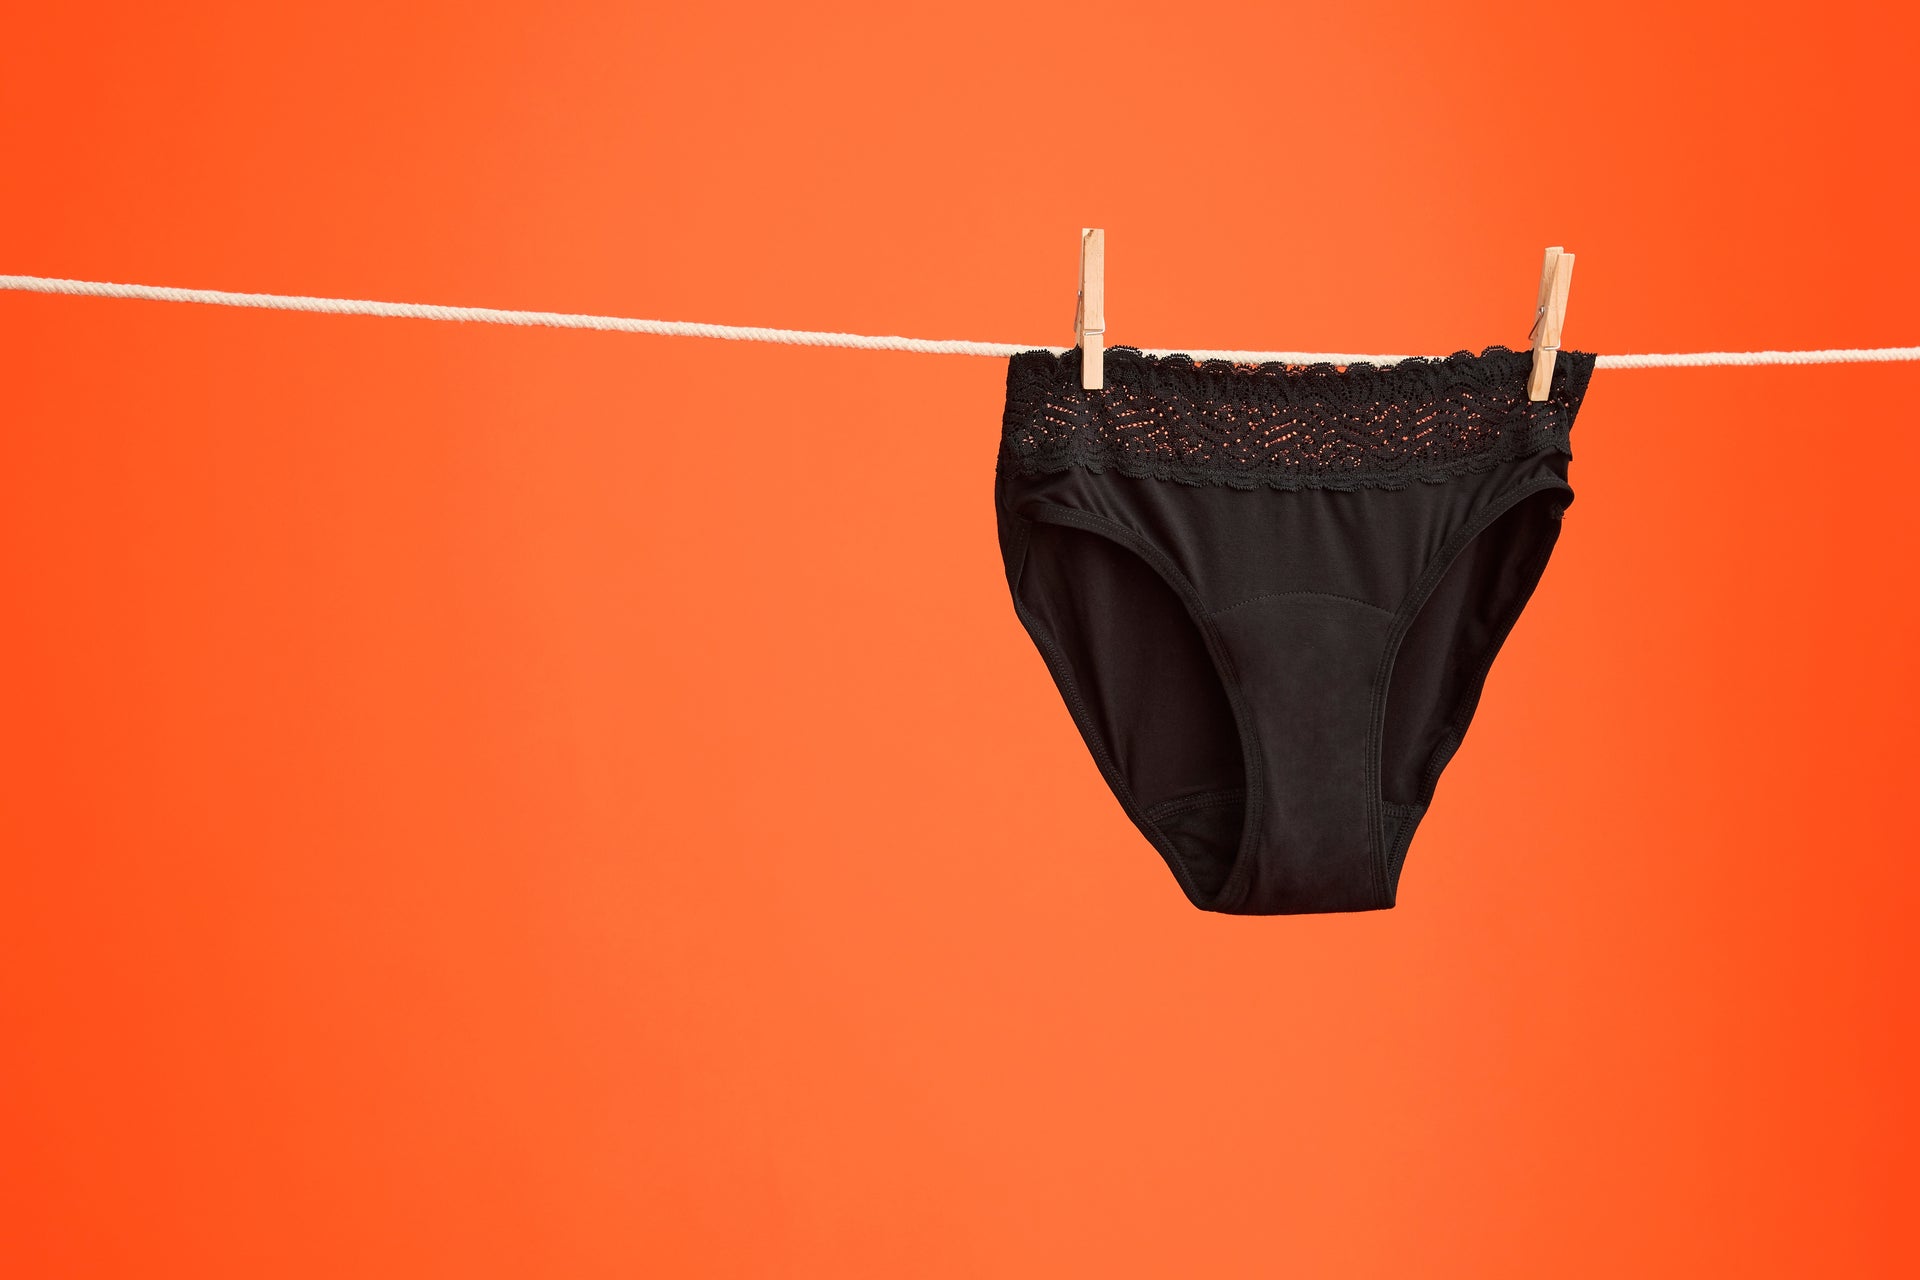 Can You Swim in Period Underwear?